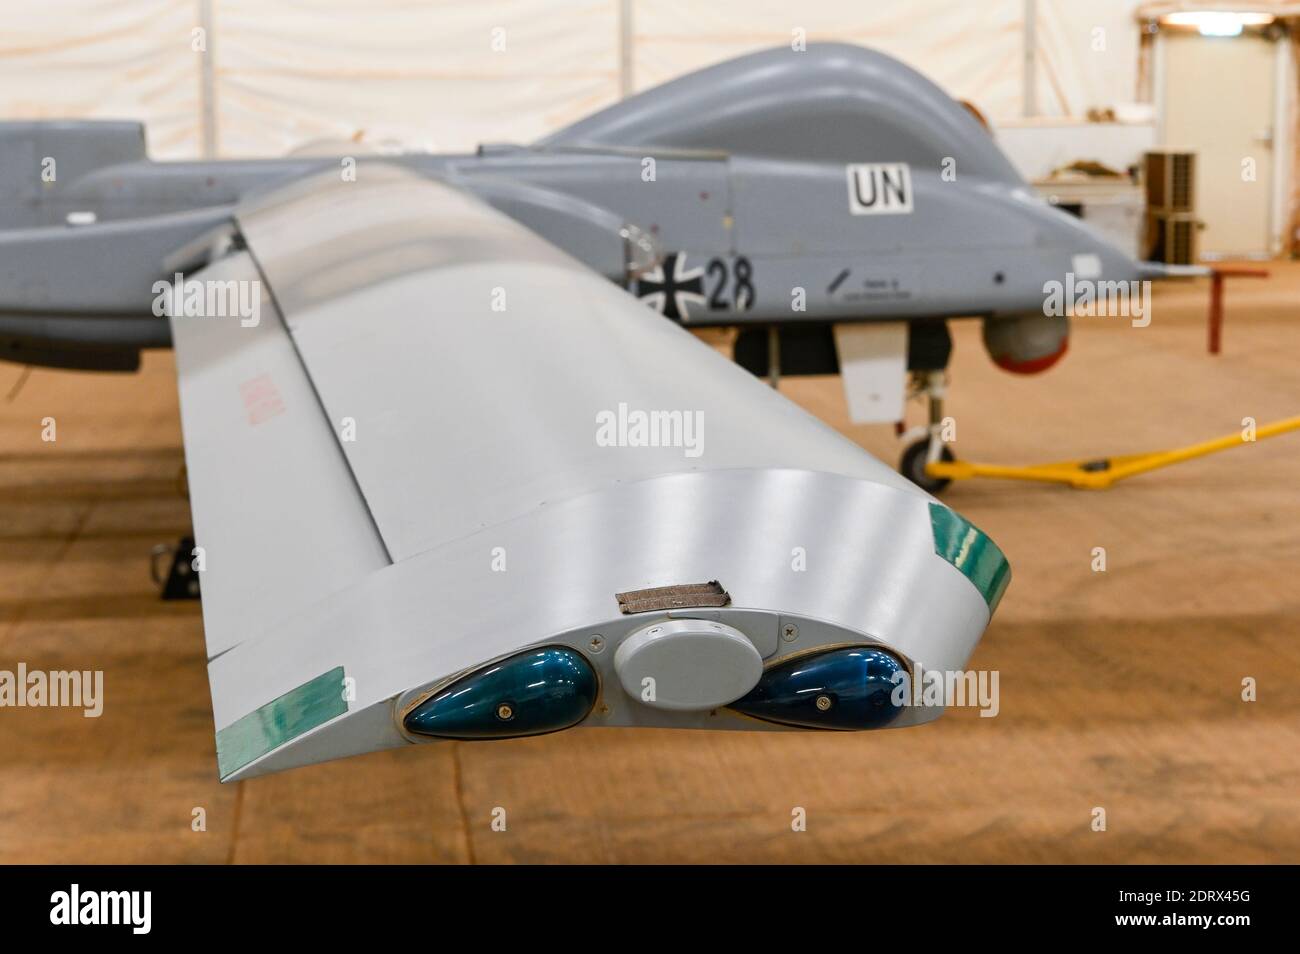 MALI, Gao, Mission de maintien de la paix des Nations Unies de la MINUSMA, Camp Castor, bundeswehr armée allemande, hangar avec drone de reconnaissance Heron, un système israélien, UAV véhicule aérien sans pilote Banque D'Images